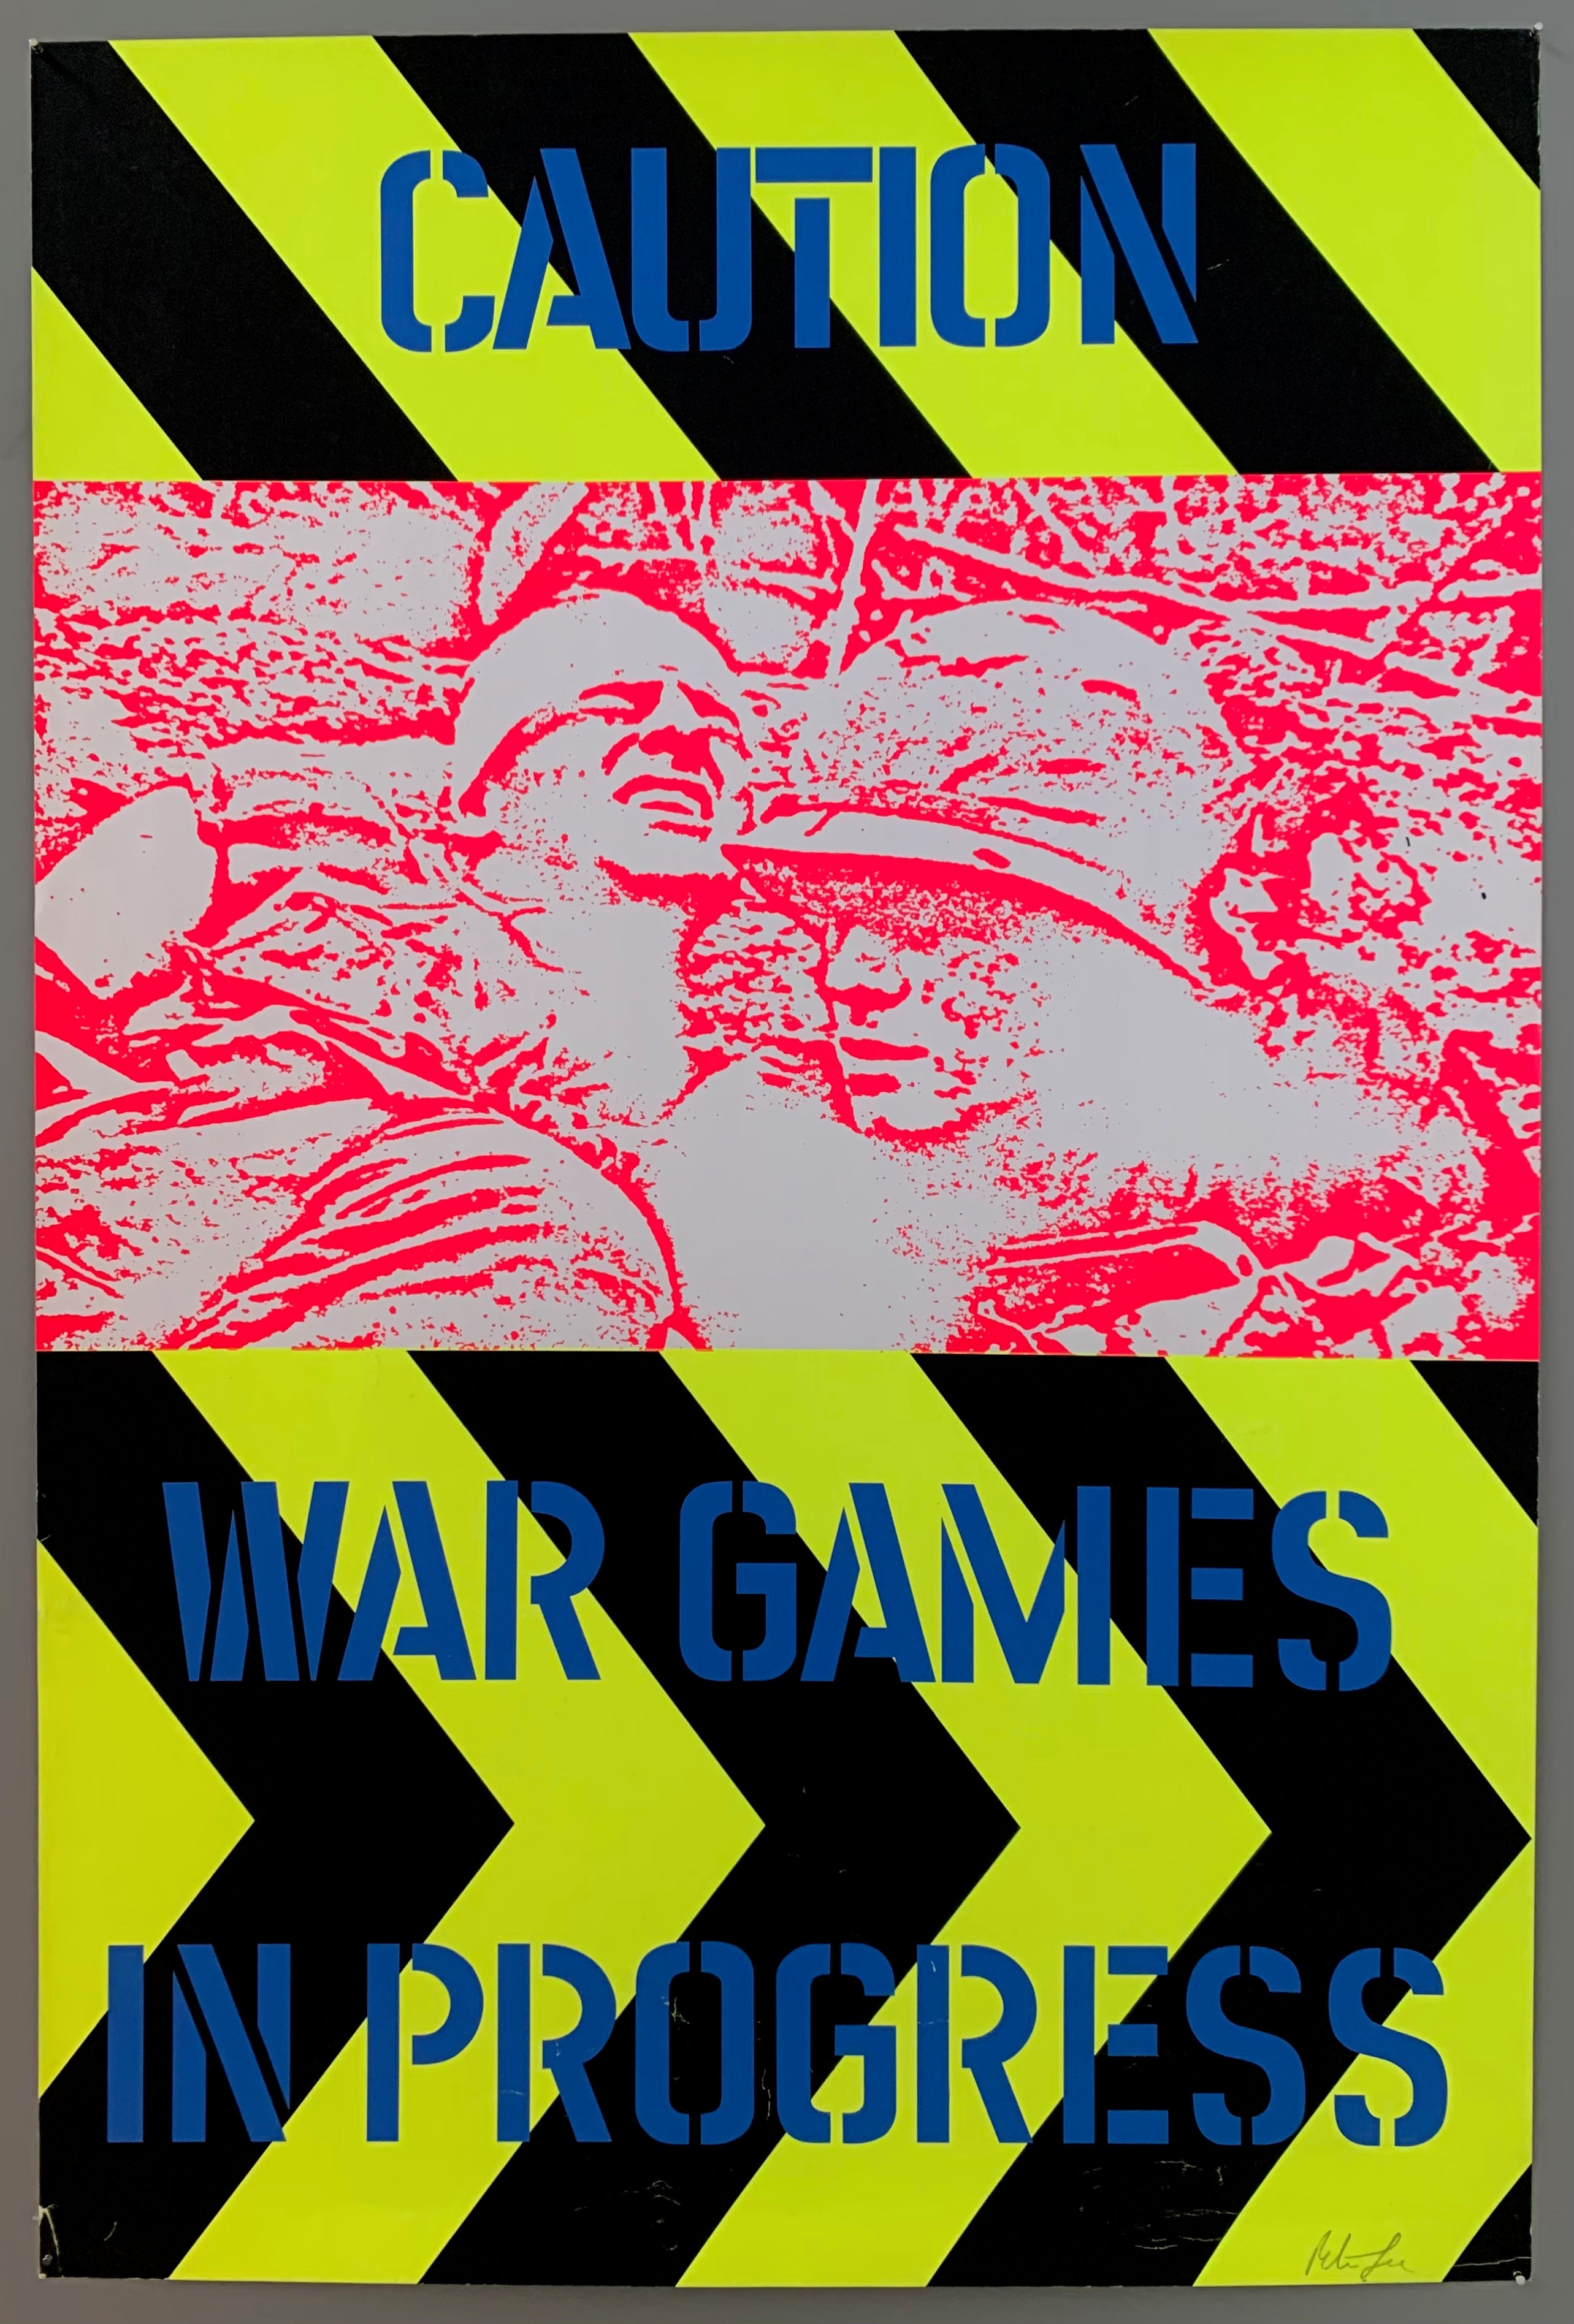 Caution: War Games In Progress